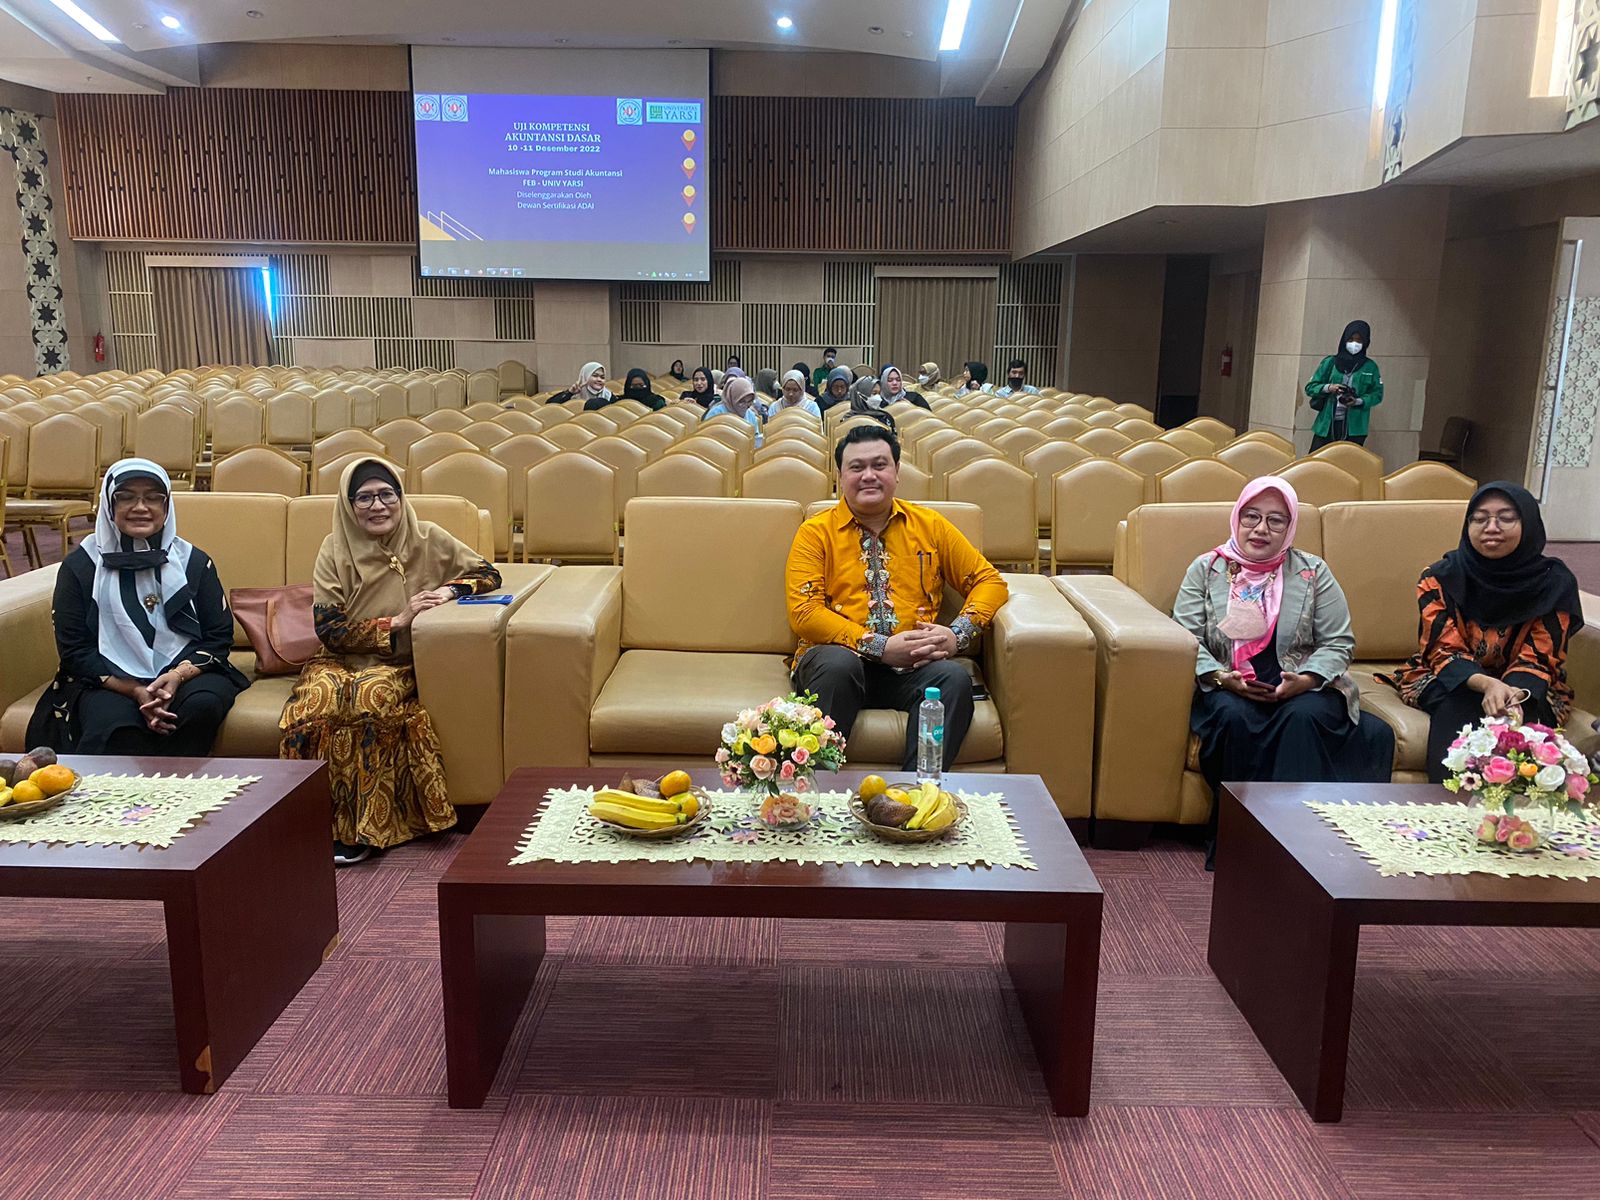 Dewan Sertifikasi Asosiasi Dosen Akuntansi Bersama DPW ADAI DKI Jakarta kembali melaksanakan kegiatan uji kompetensi Akuntansi Dasar. Foto: Mas Andre dan Eko Cahyo (SUARA UTAMA)